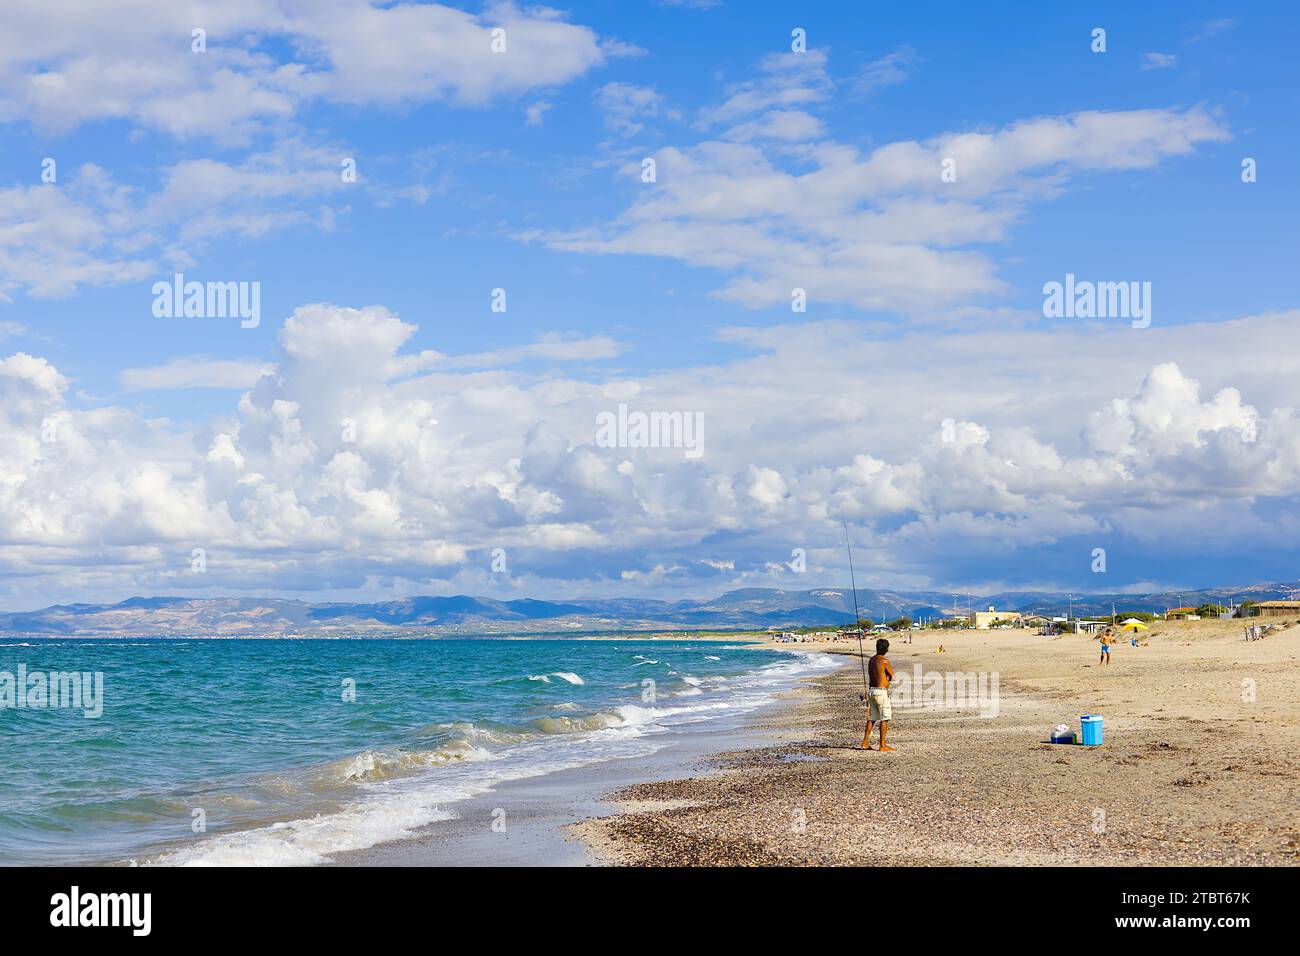 Sulla spiaggia di Plata Mona, Sardegna, Italia, un pescatore sardo è raffigurato con una canna. L'immagine mostra la spiaggia e le montagne lontane. Foto Stock